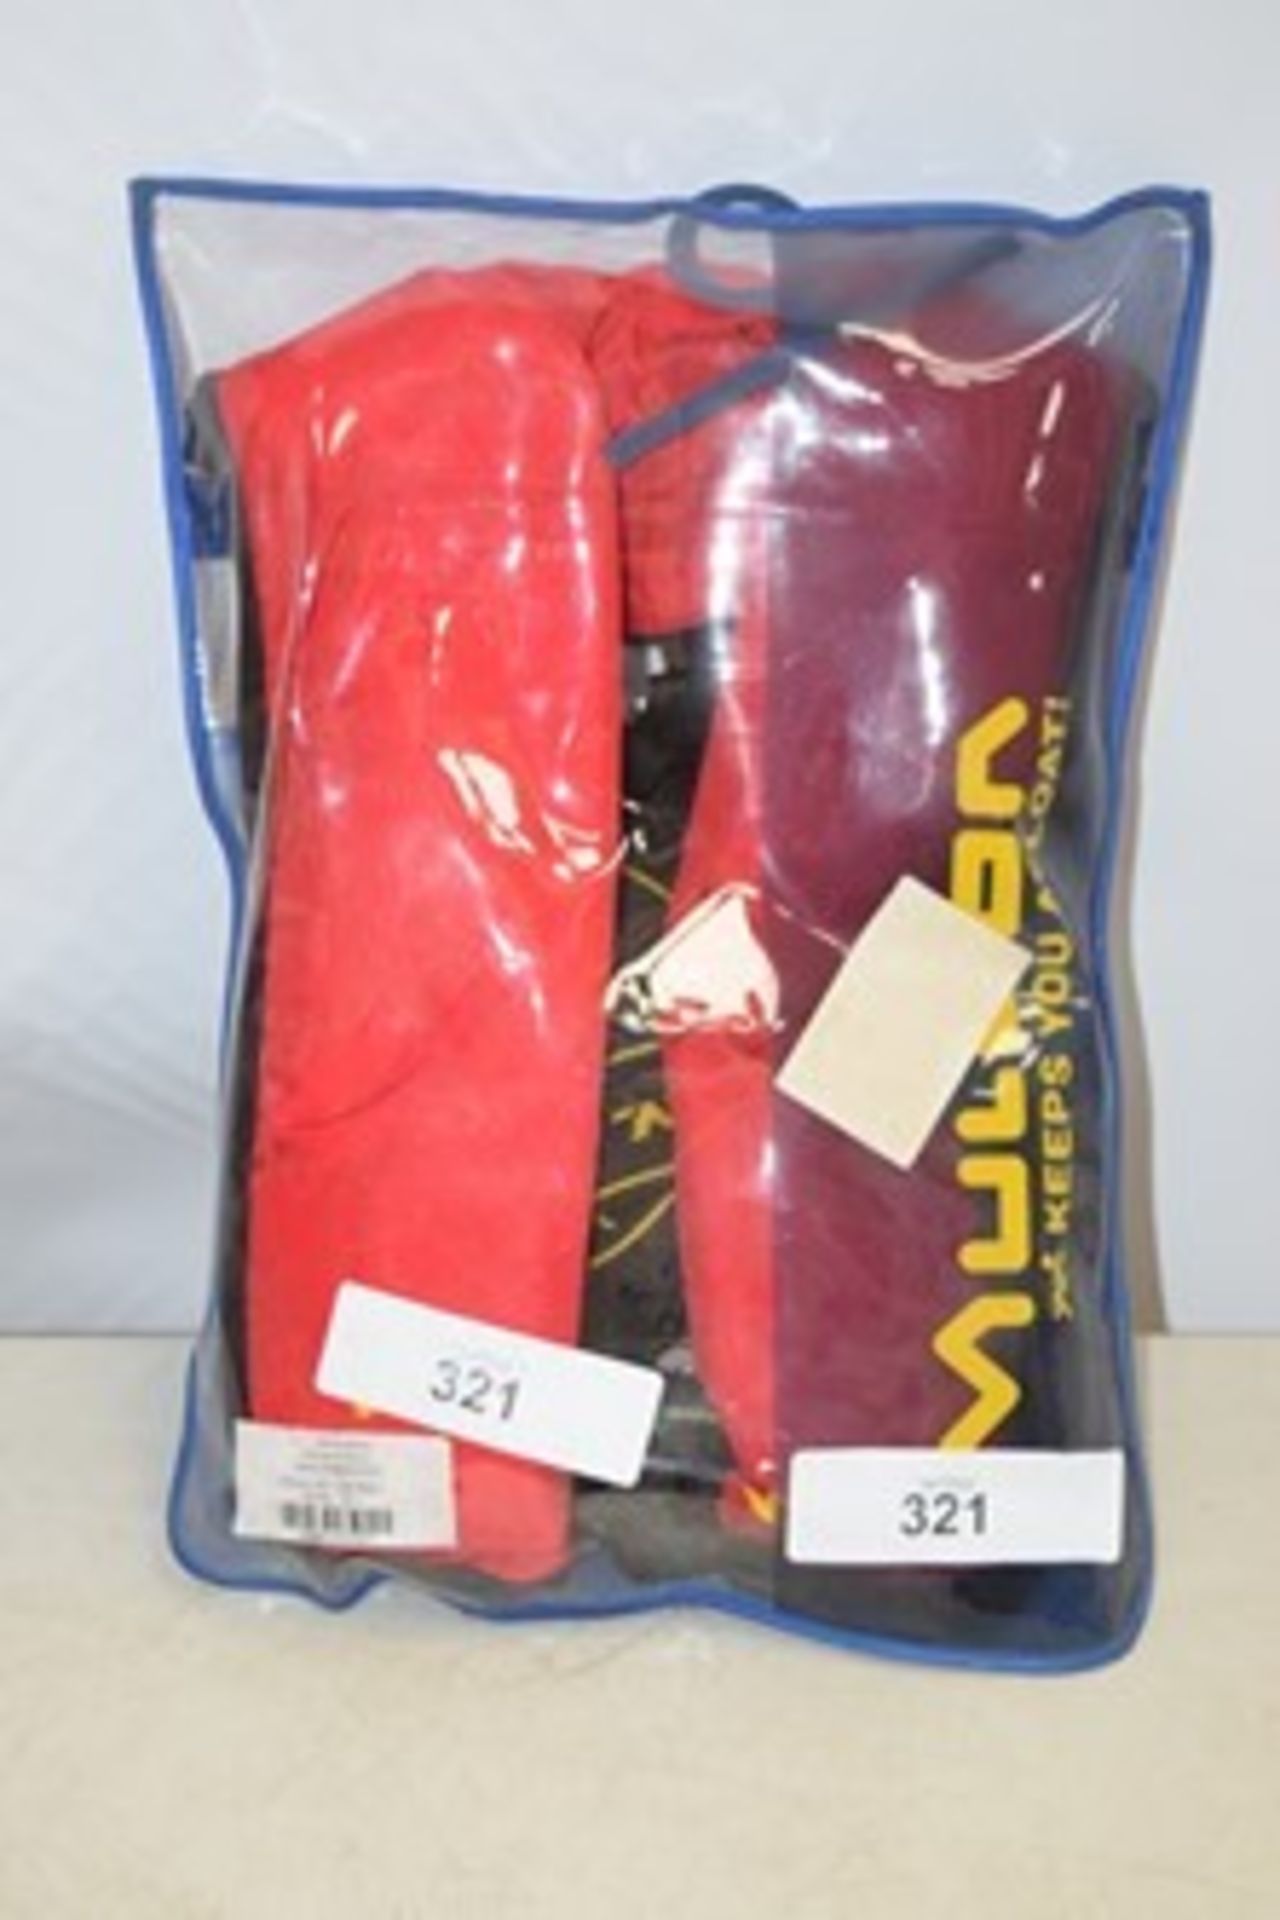 1 x Mullion Mariner 275N life jacket - New in pack (ES15)